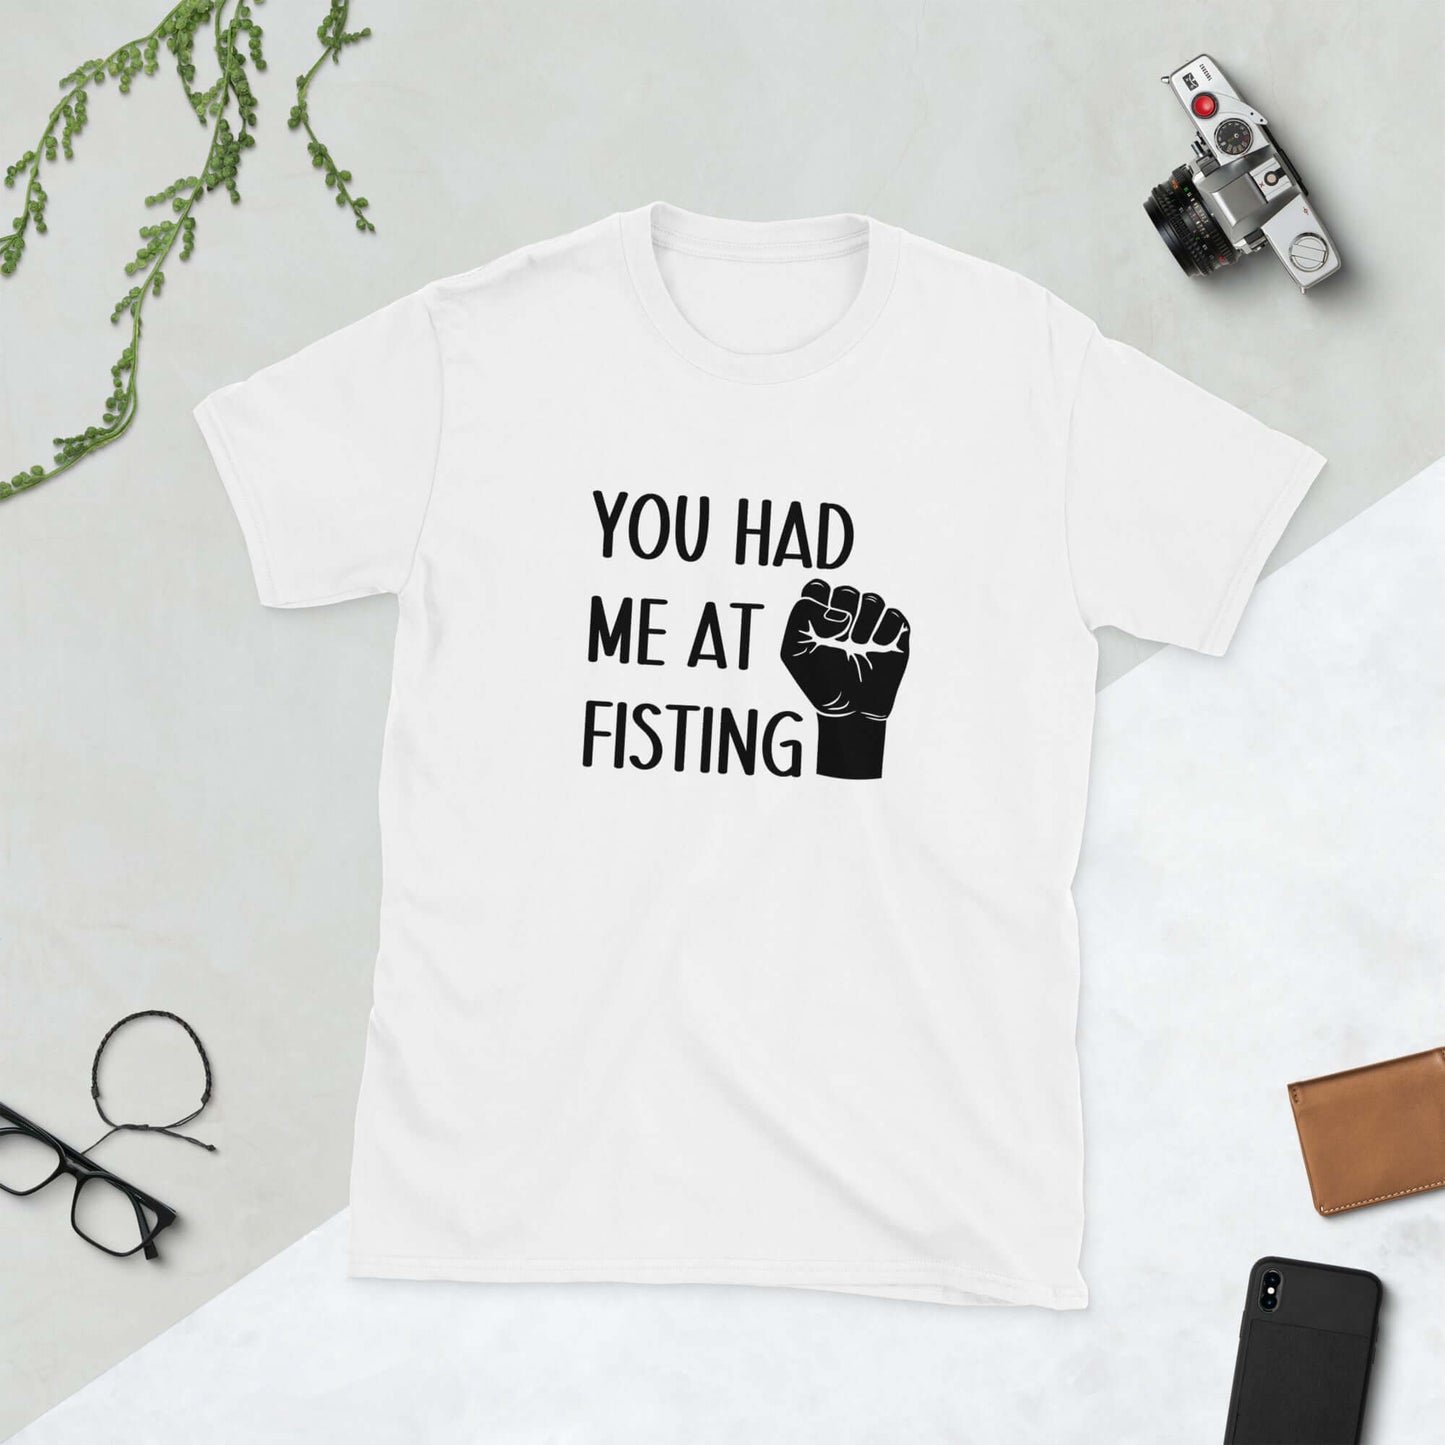 You had me at fisting t-shirt.